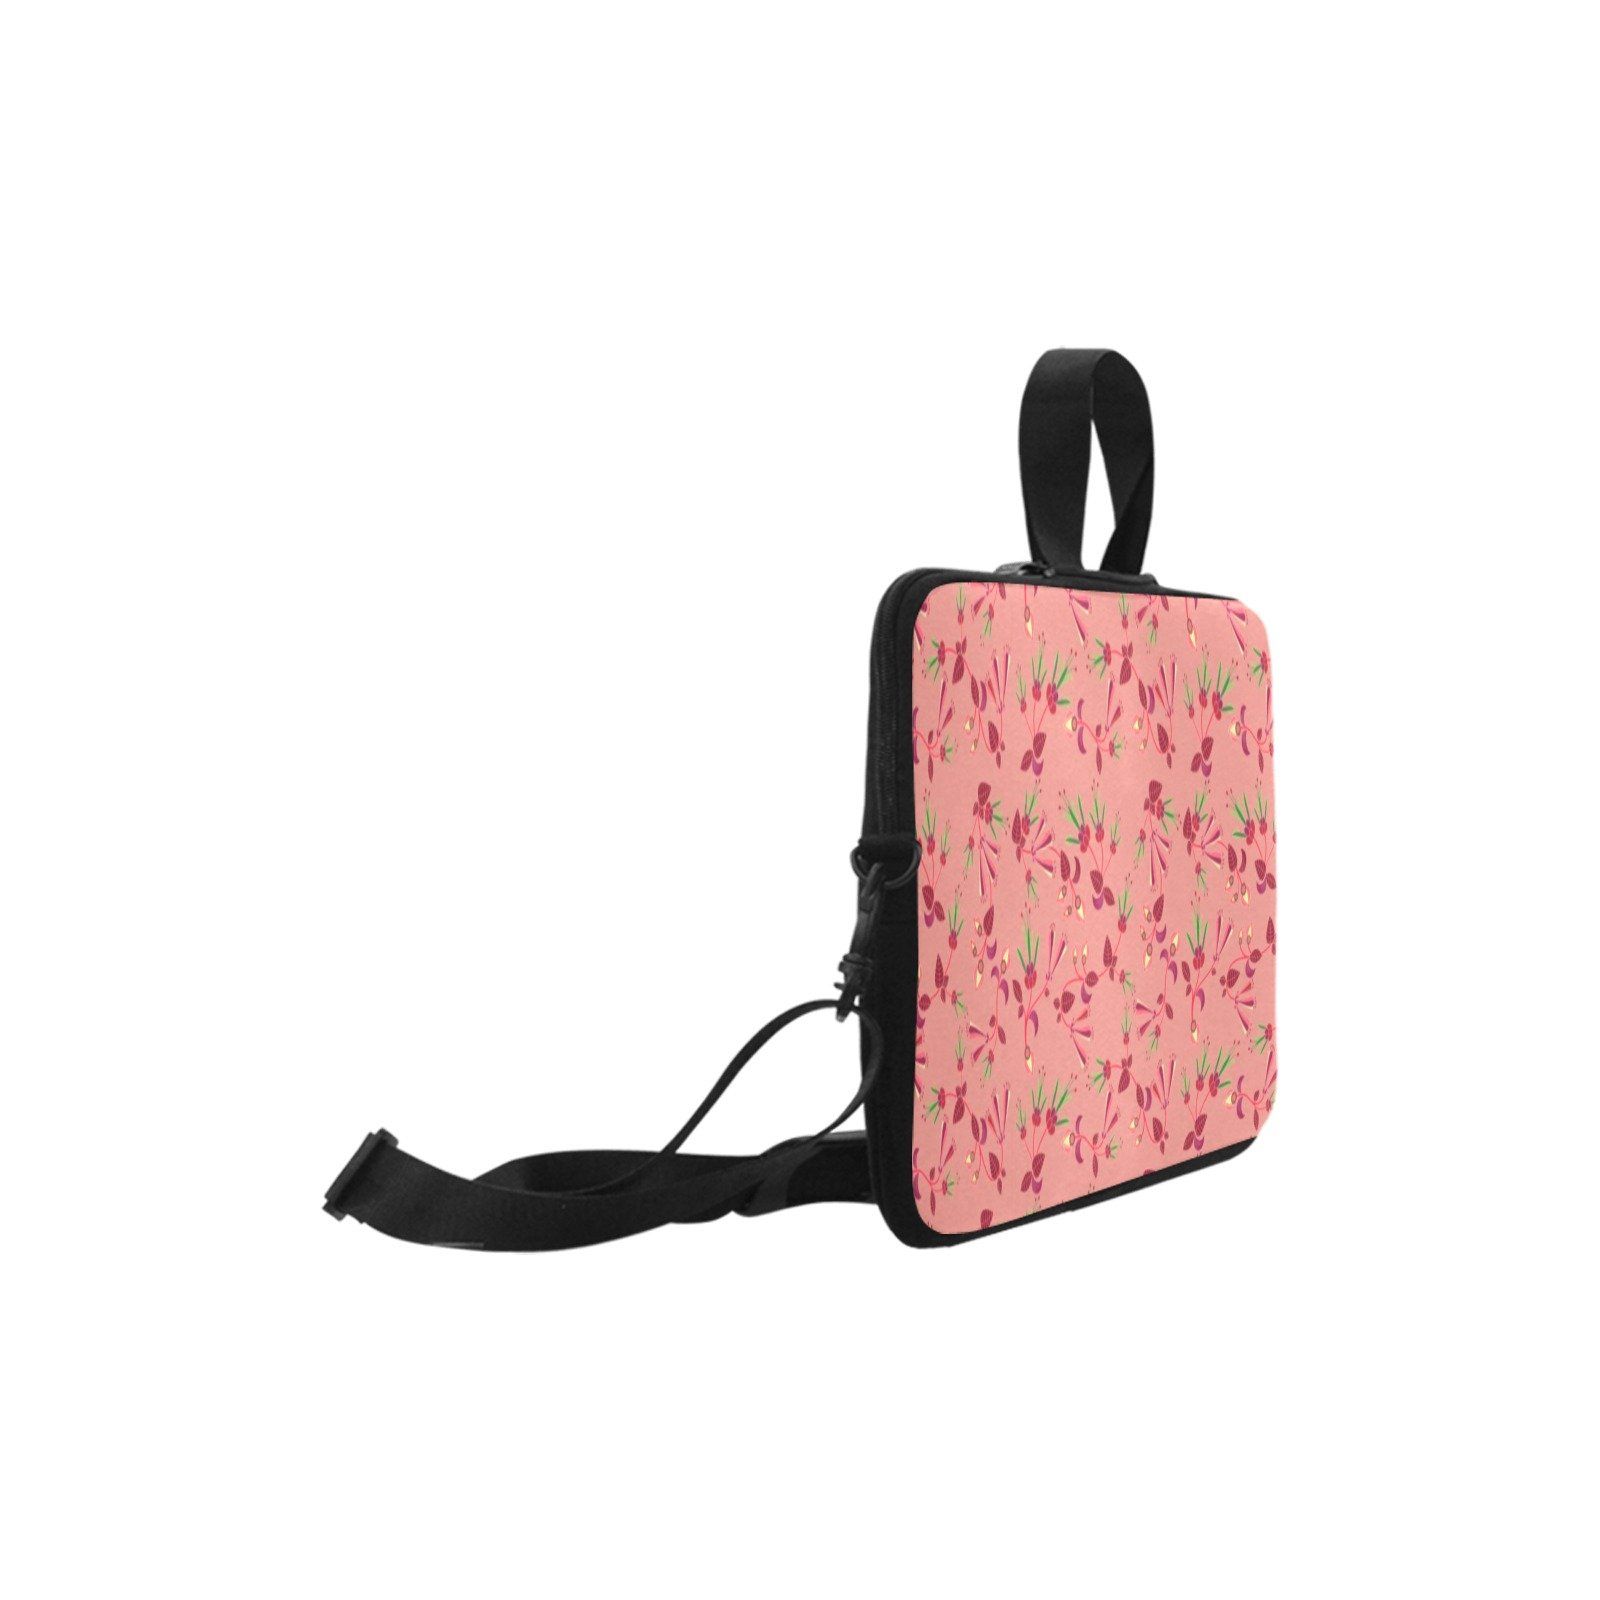 Swift Floral Peach Rouge Remix Laptop Handbags 13" Laptop Handbags 13" e-joyer 